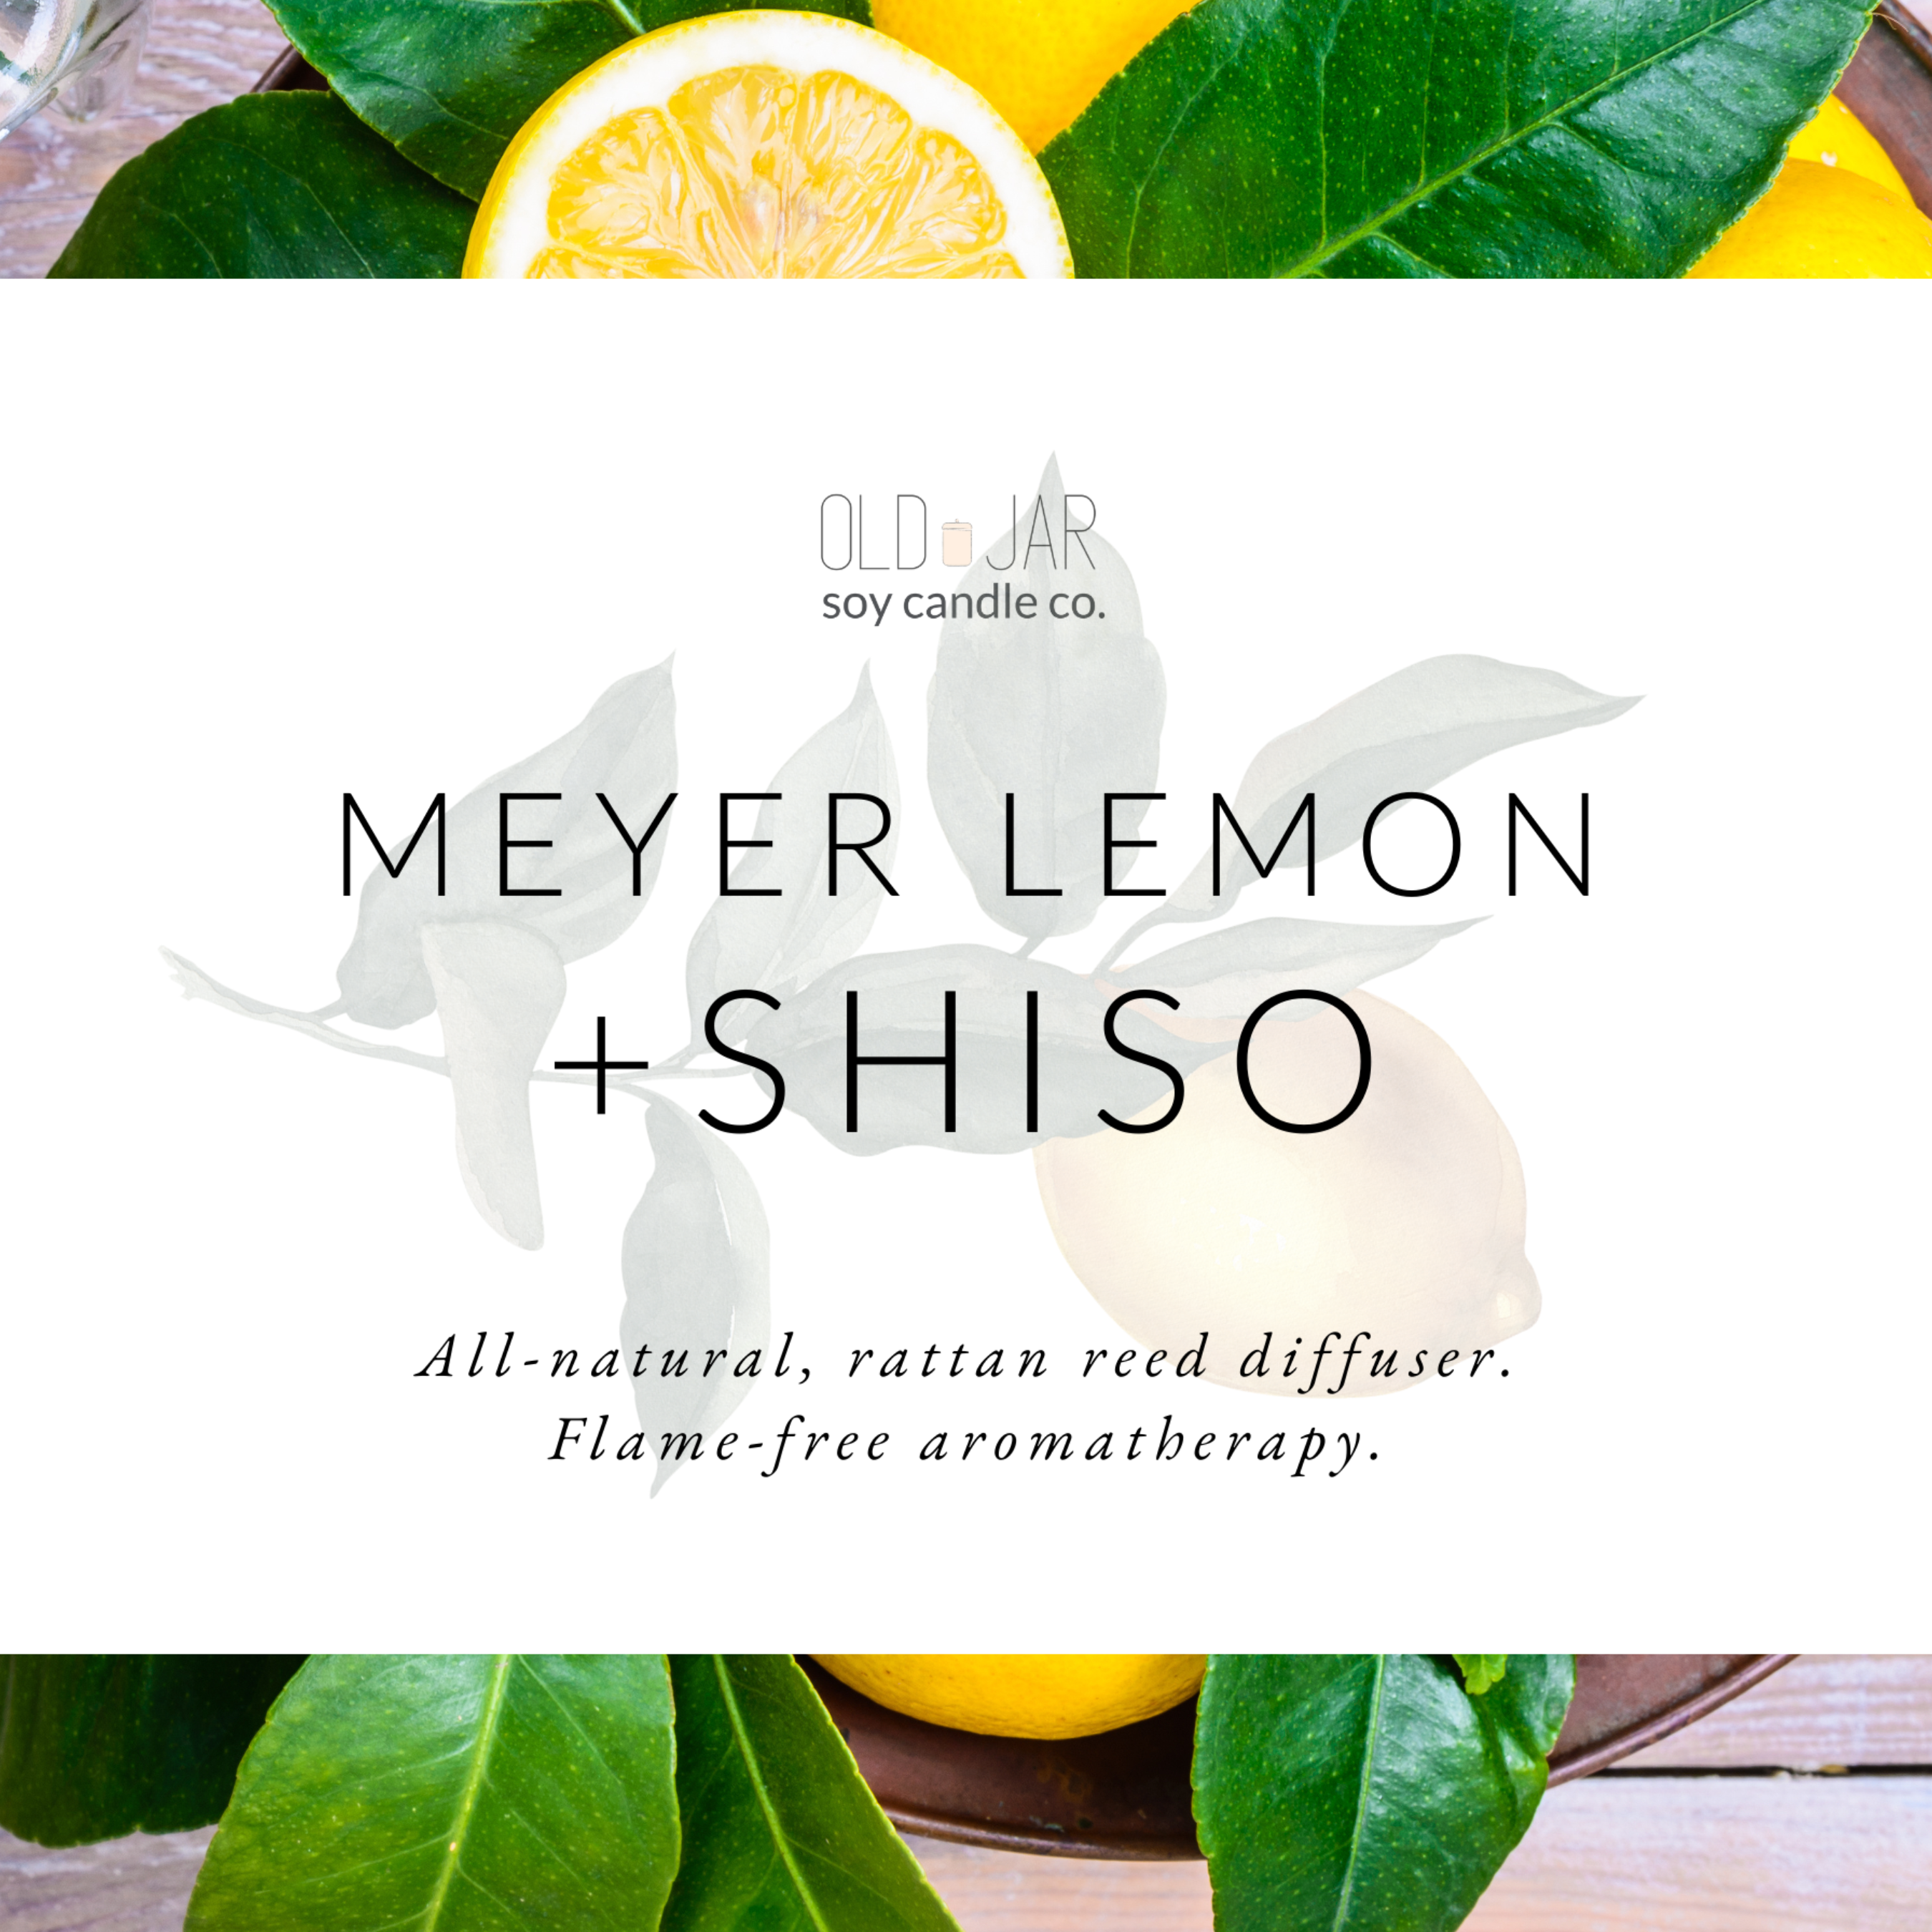 Meyer Lemon + Shiso Diffuser